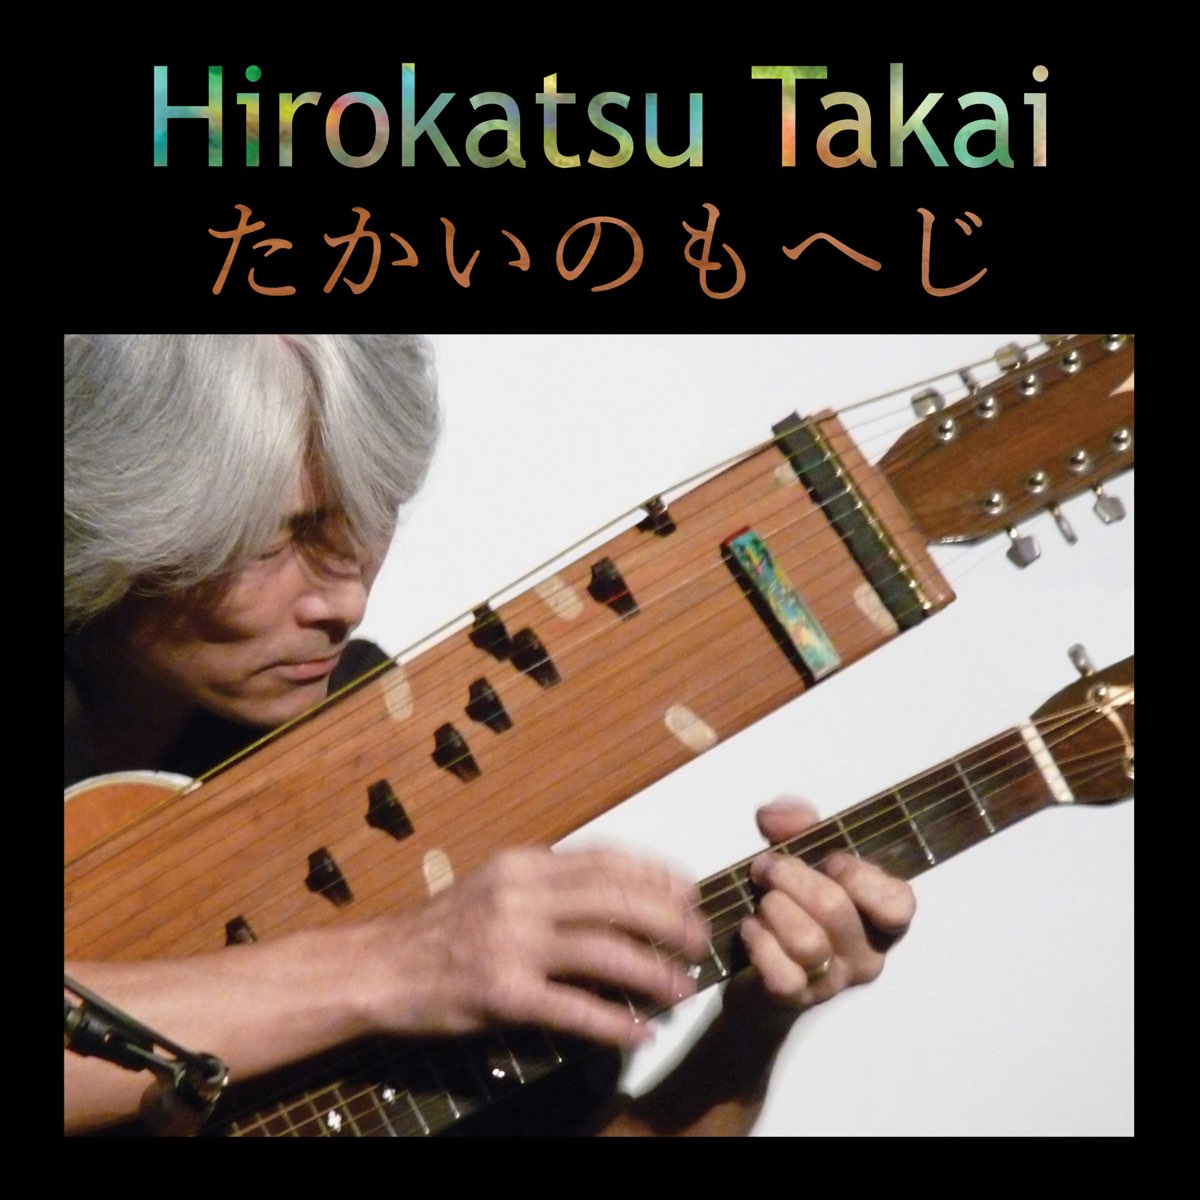 Hirokatsu Takaiの Master Of The Koto Harp Guitar をapple Musicで